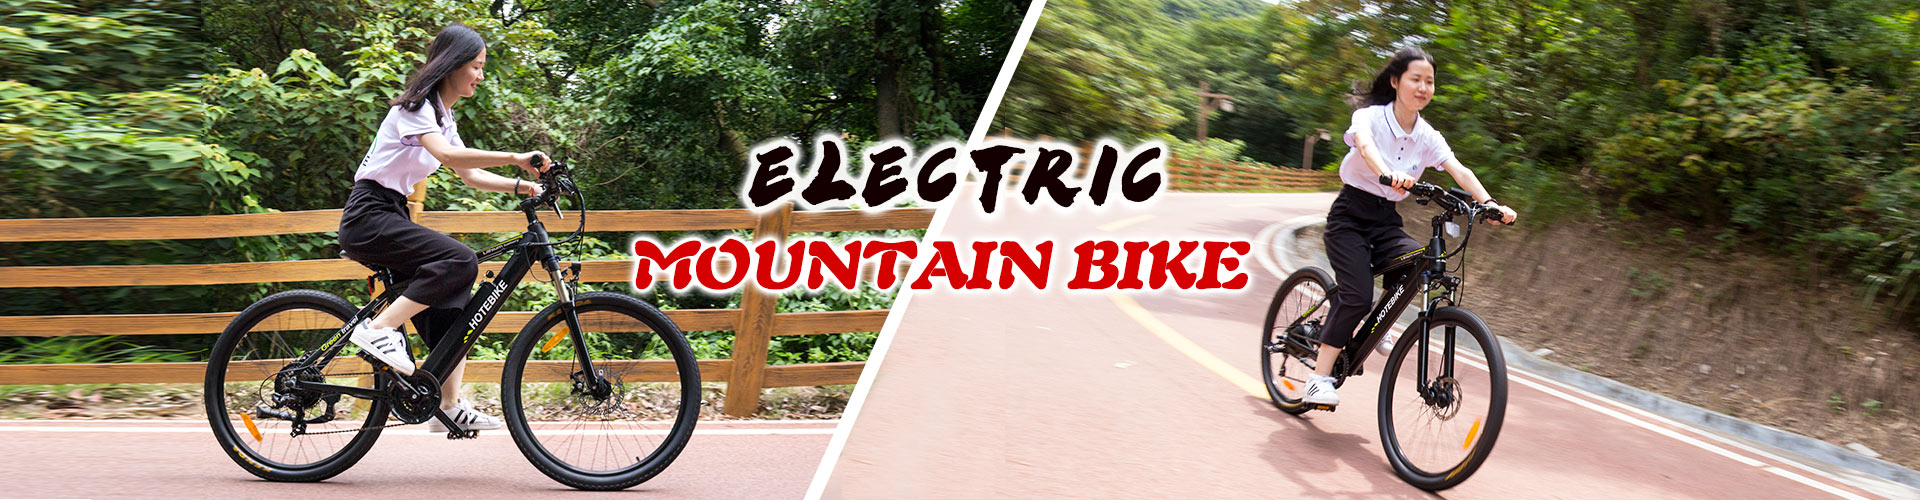 electric mountain bike